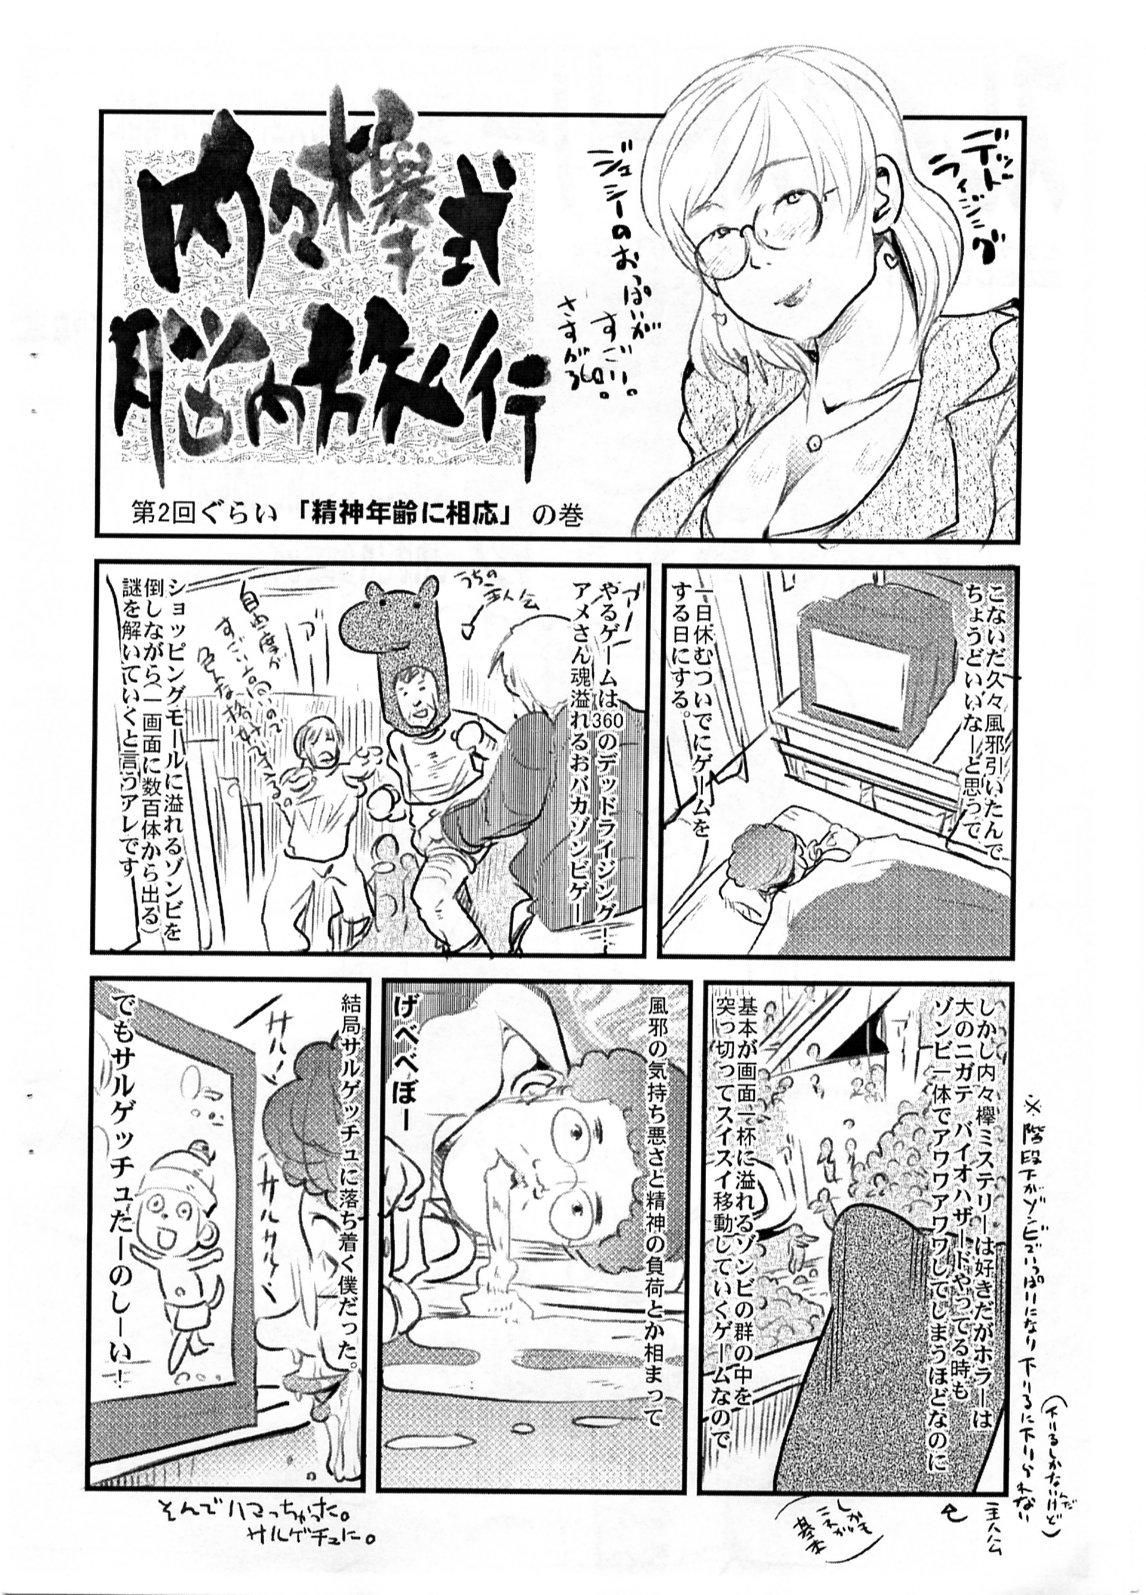 Plumper Yaseiji ni iroiro oshieru hon nano da - Digimon savers Free Oral Sex - Page 11